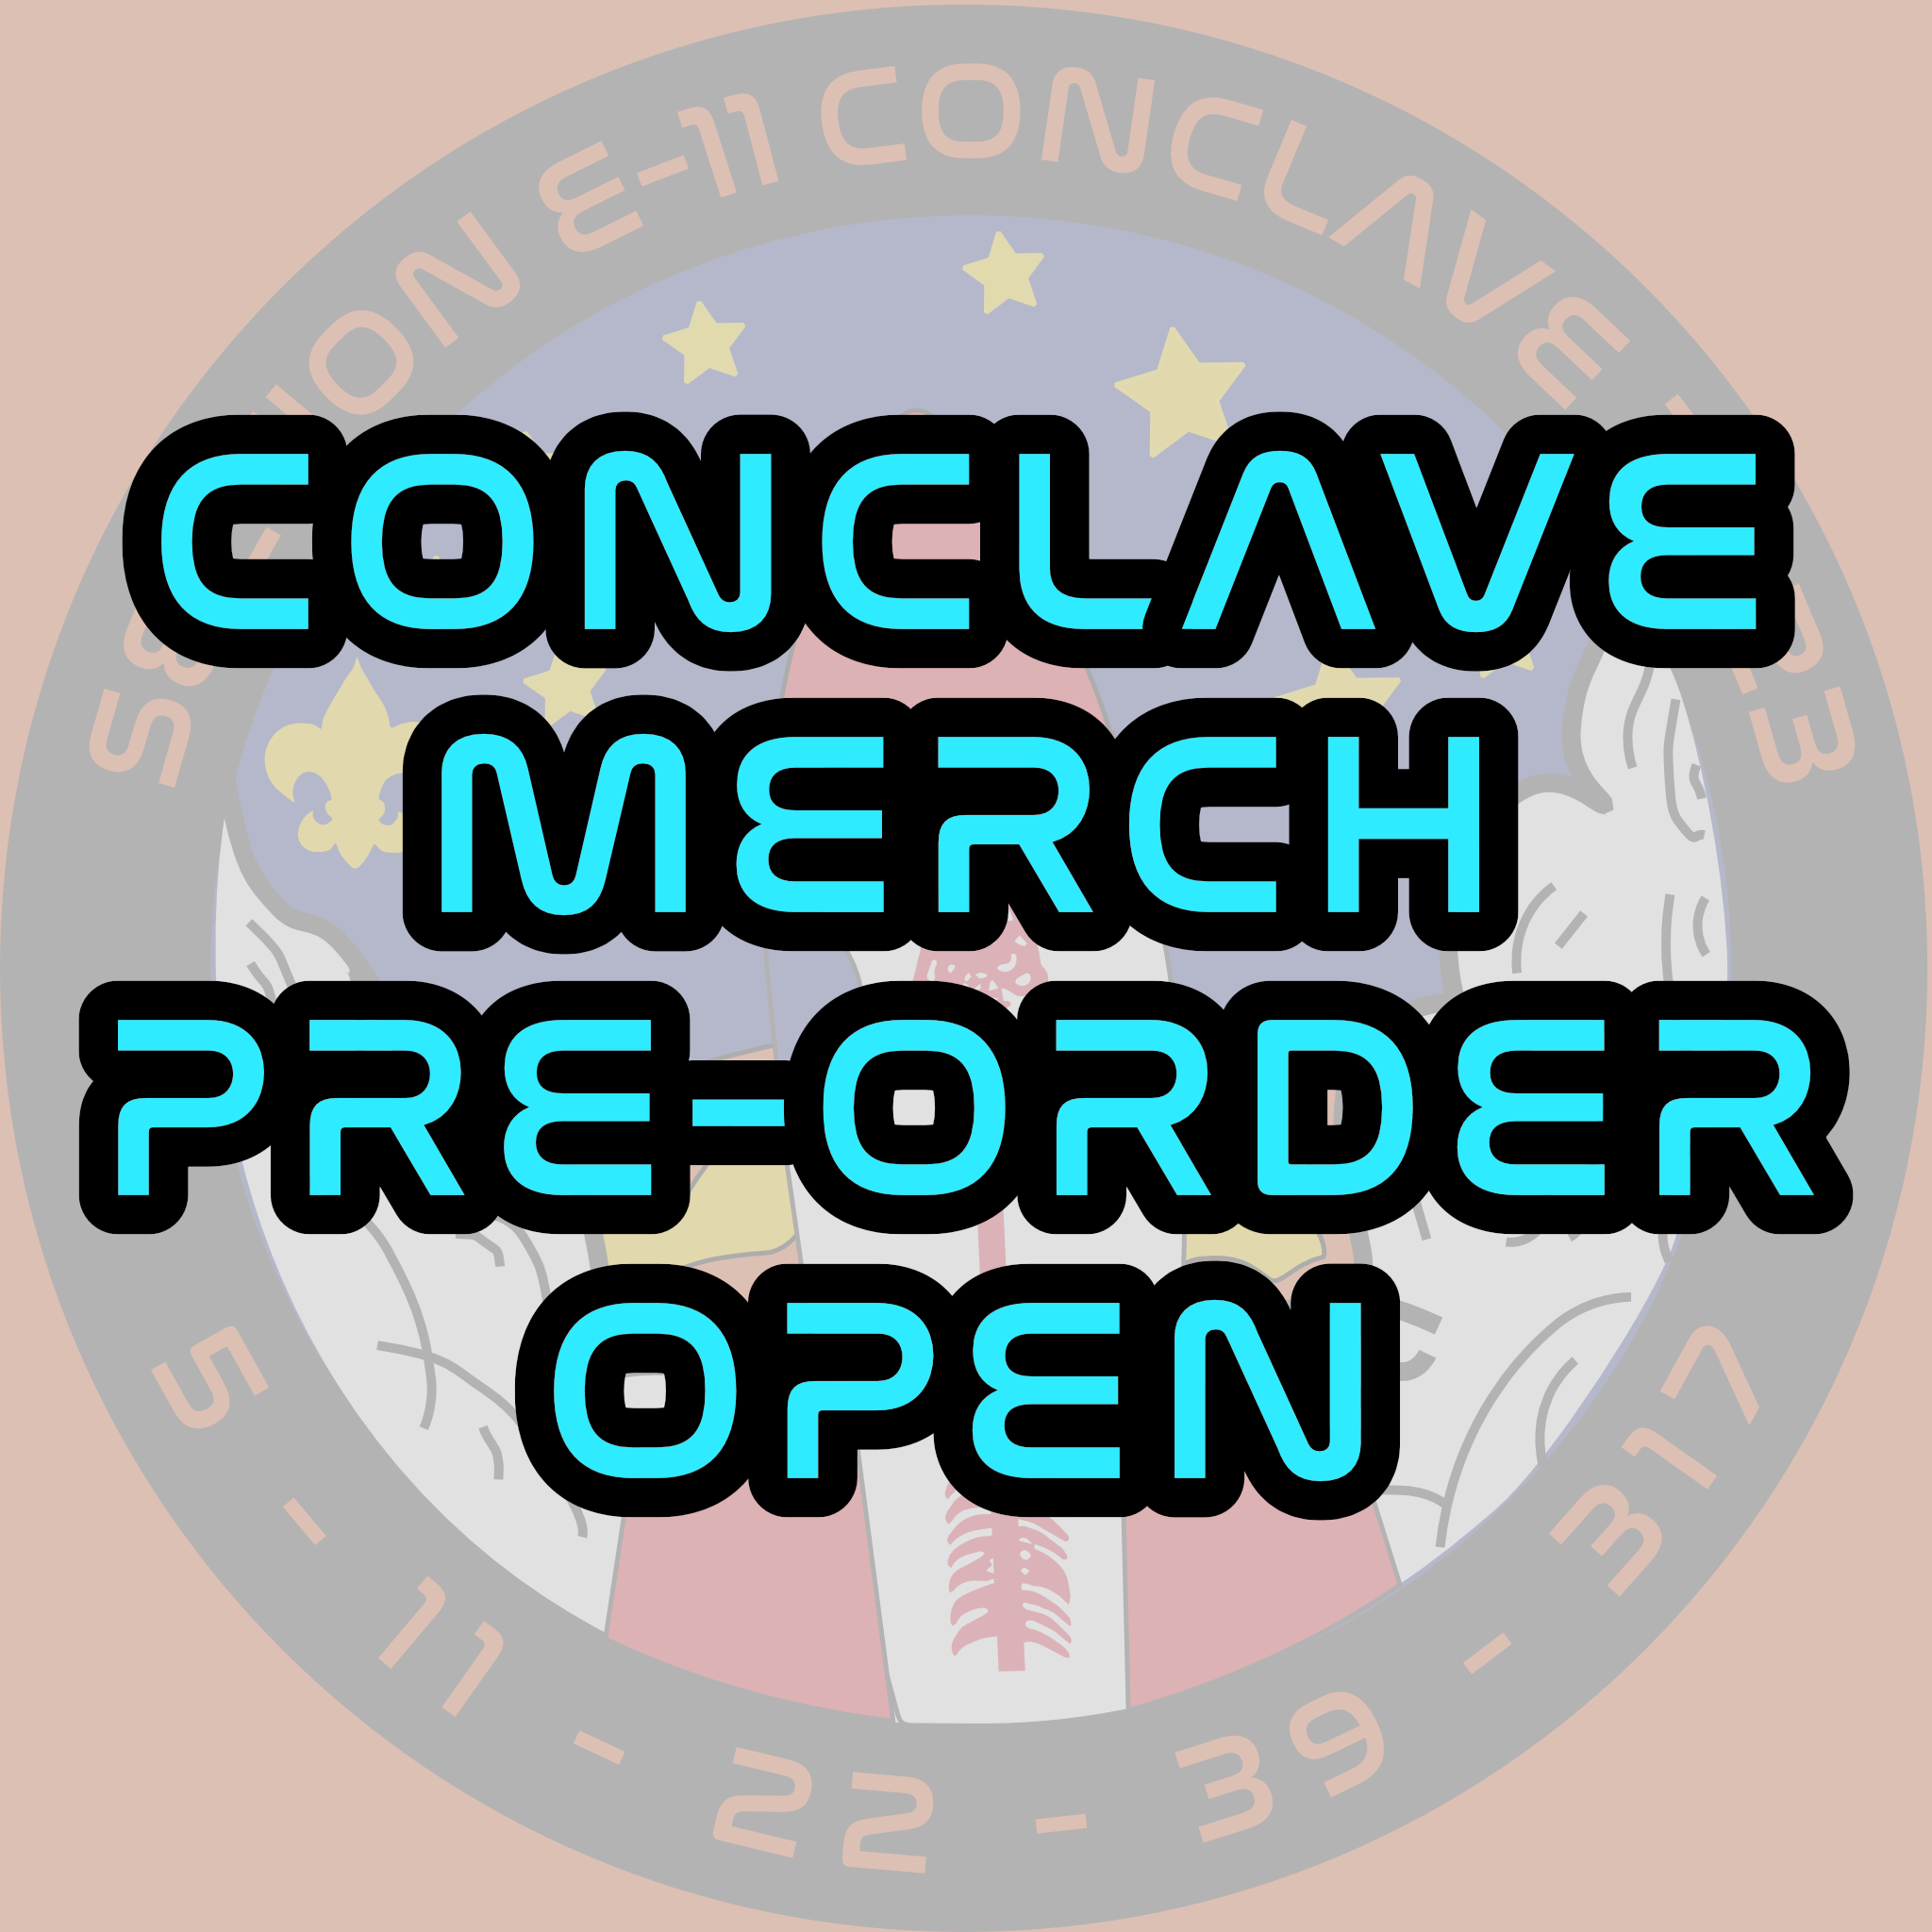 Conclave Merch Pre-Order Open